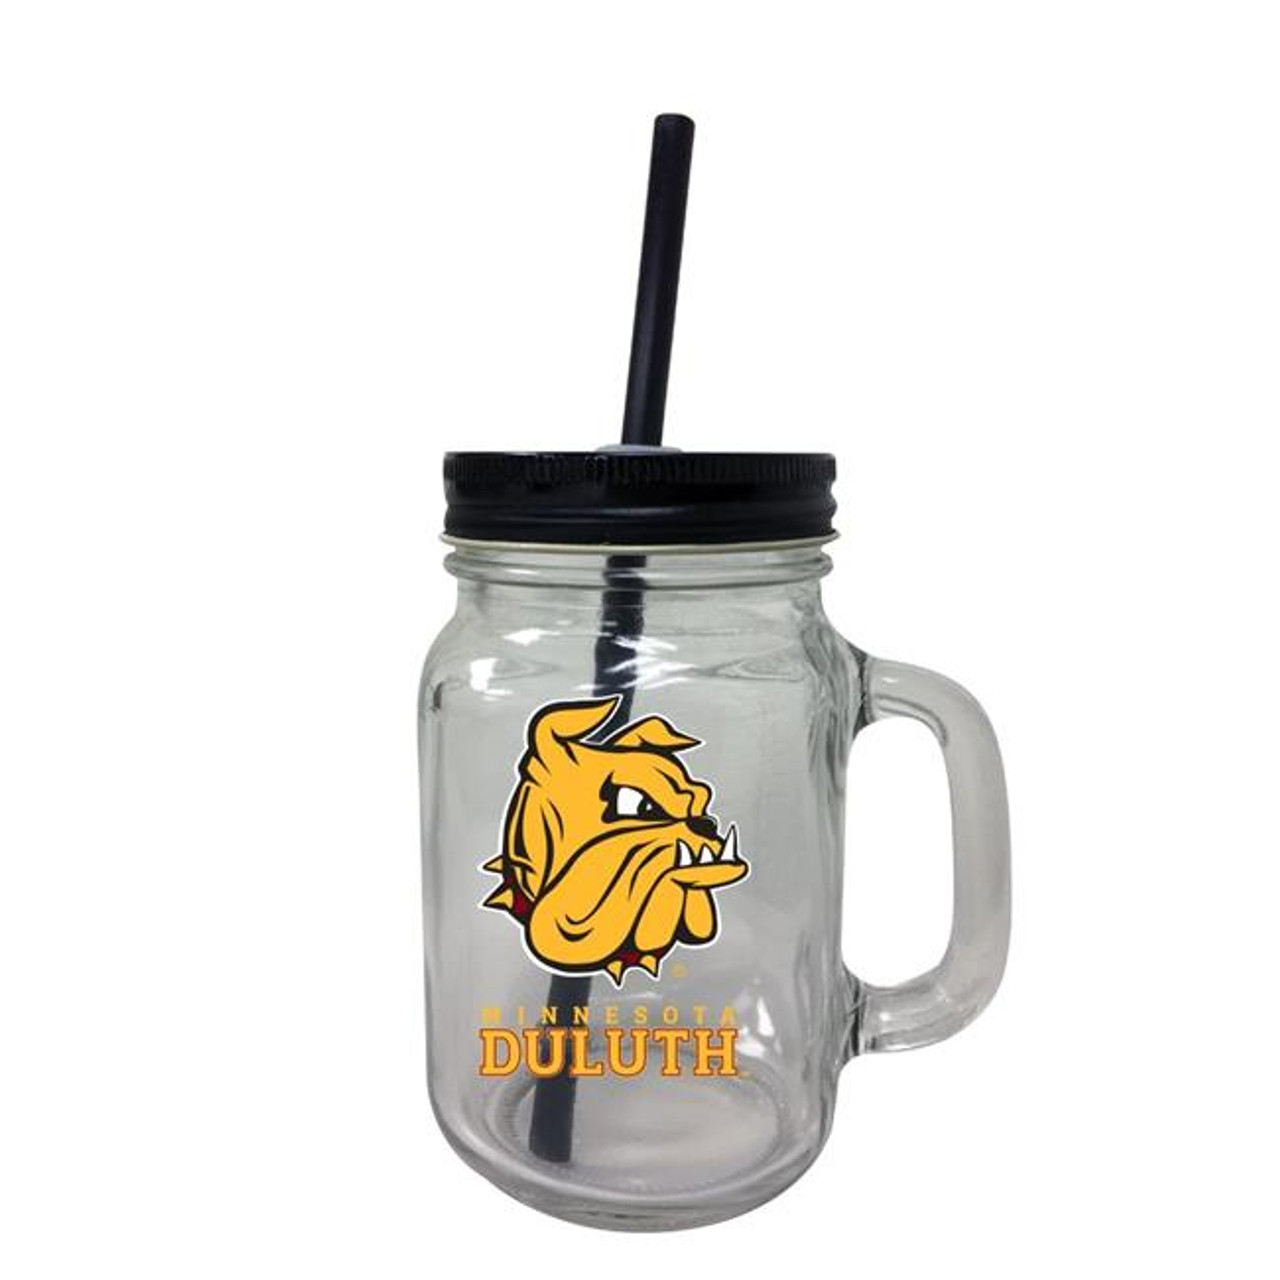 University of Minnesota Duluth Mason Jar Glass